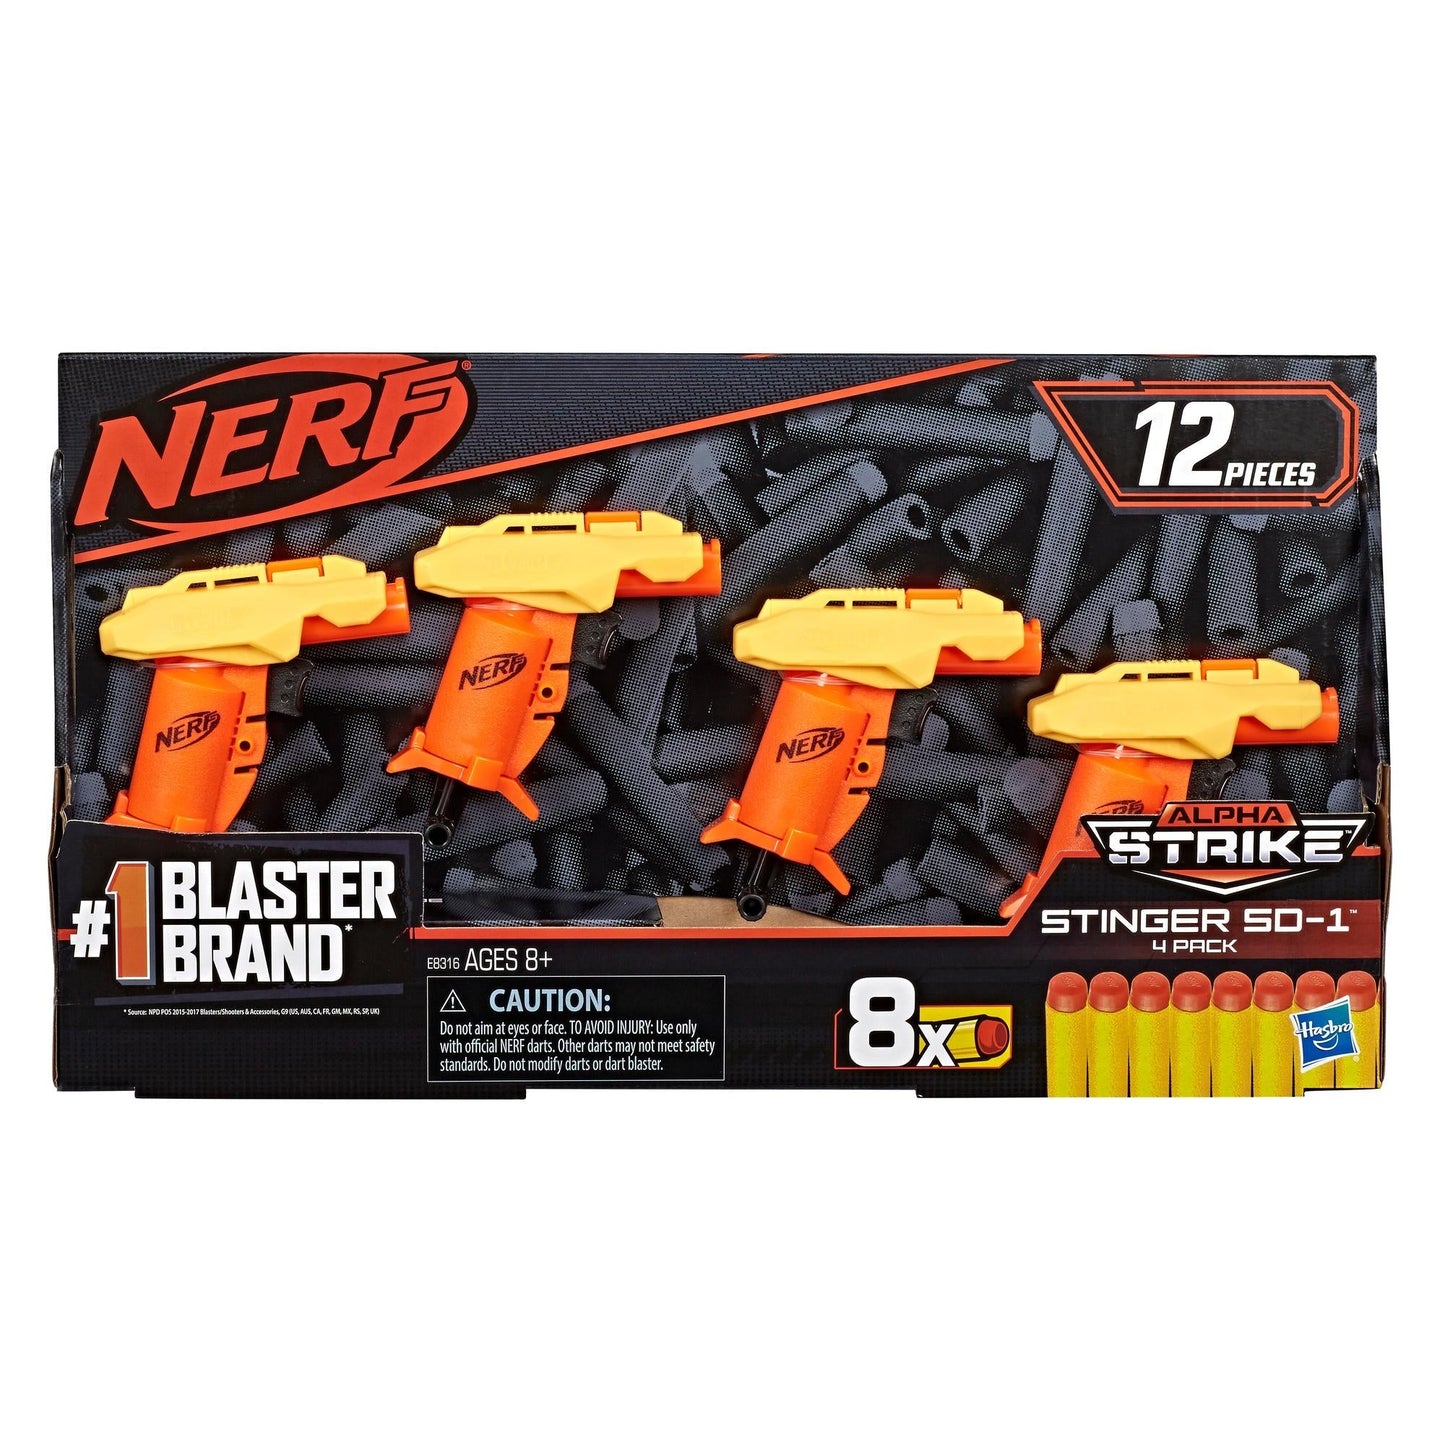 Nerf Alpha Strike Stinger SD-1 Blaster 4-Pack